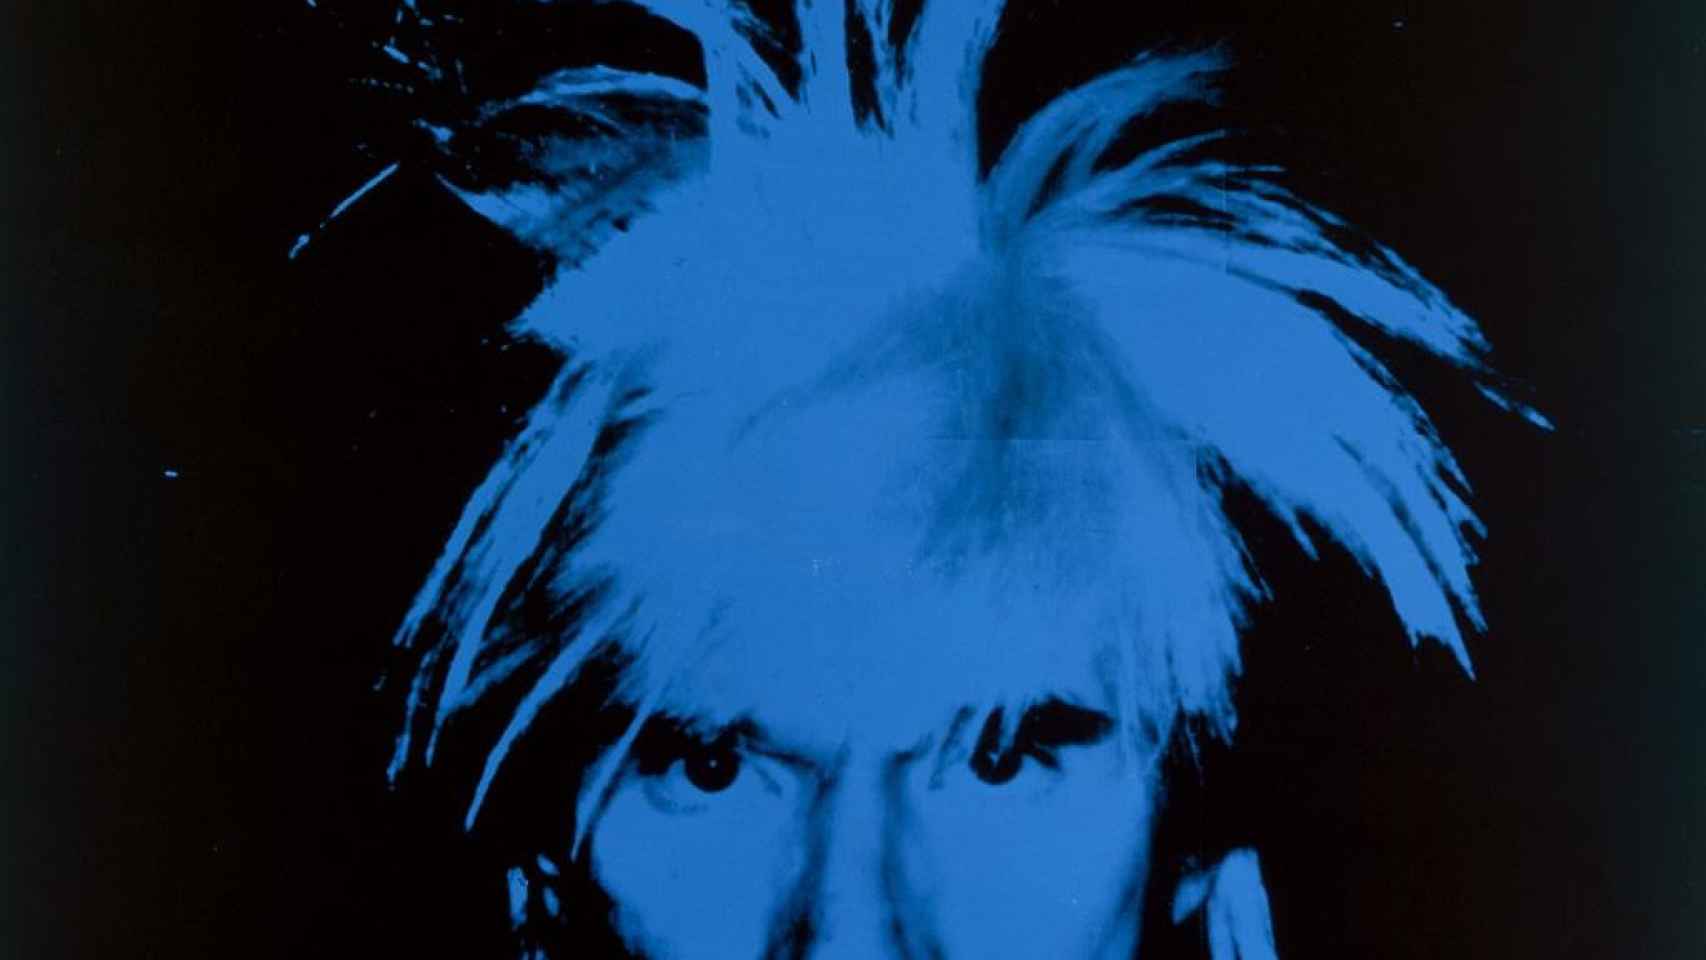 Autorretrato de Andy Warhol, fechado en 1986. THE ANDY WARHOL FOUNDATION INC. / VEGAP, MÁLAGA, 2018